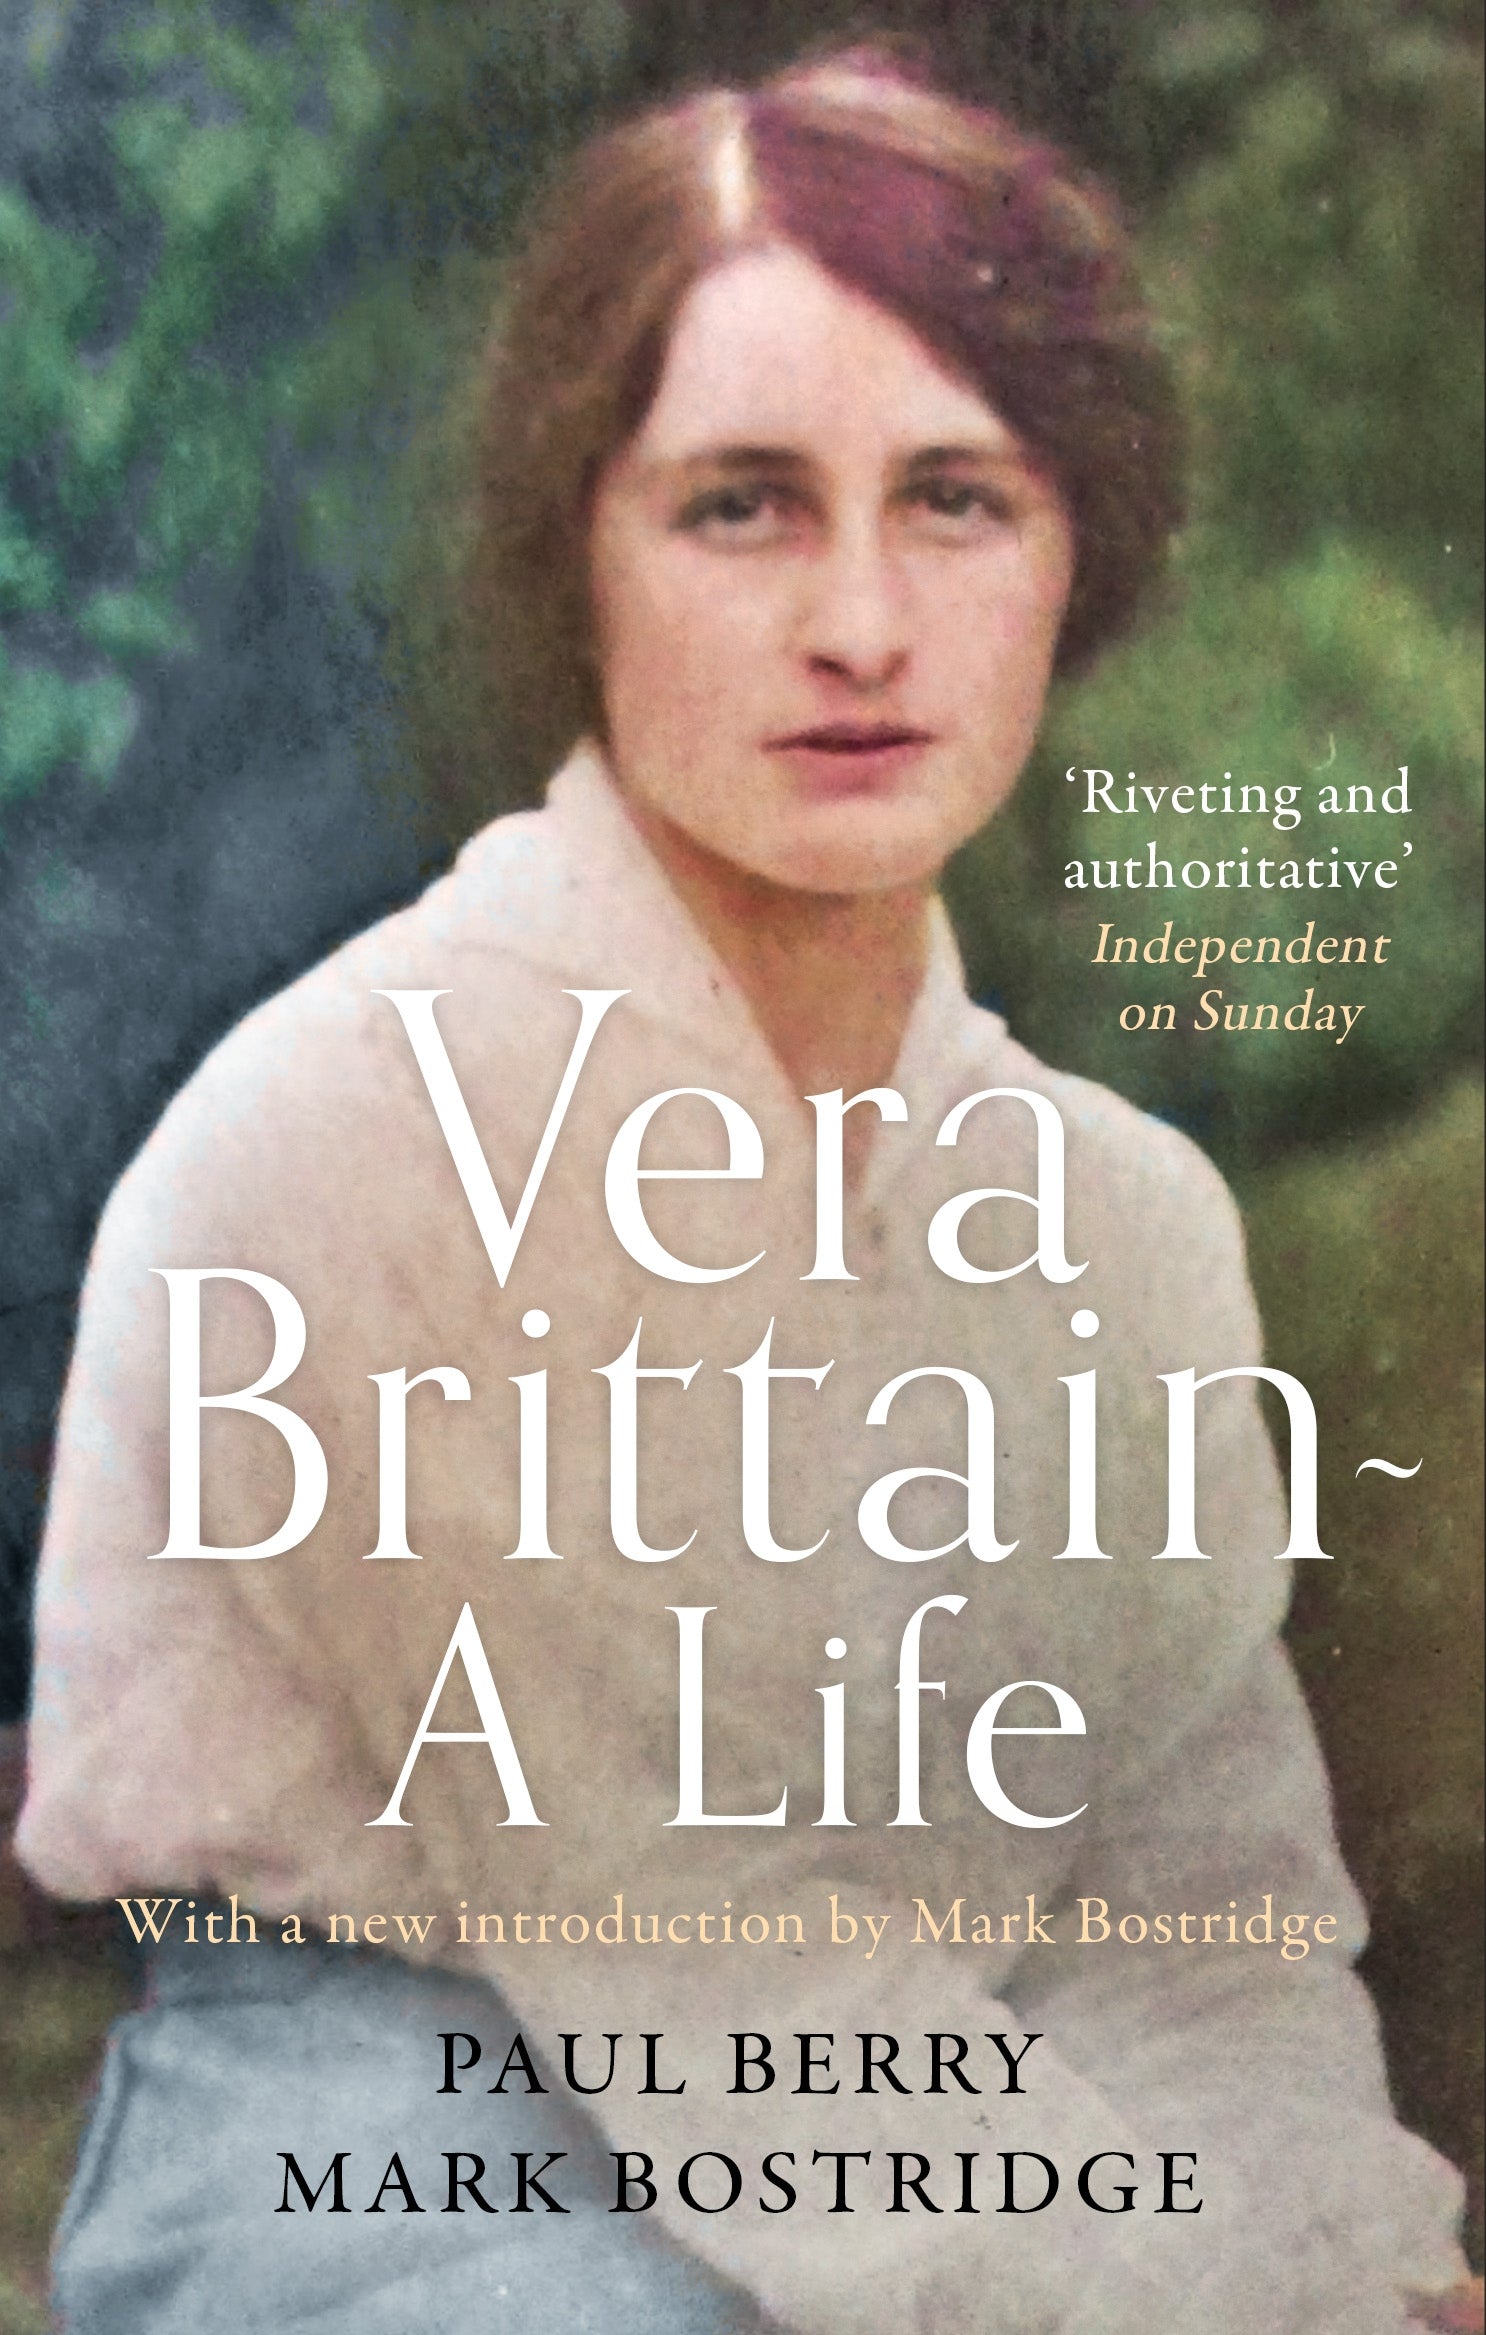 Vera Brittain: A Life by Mark Bostridge, Paul Berry